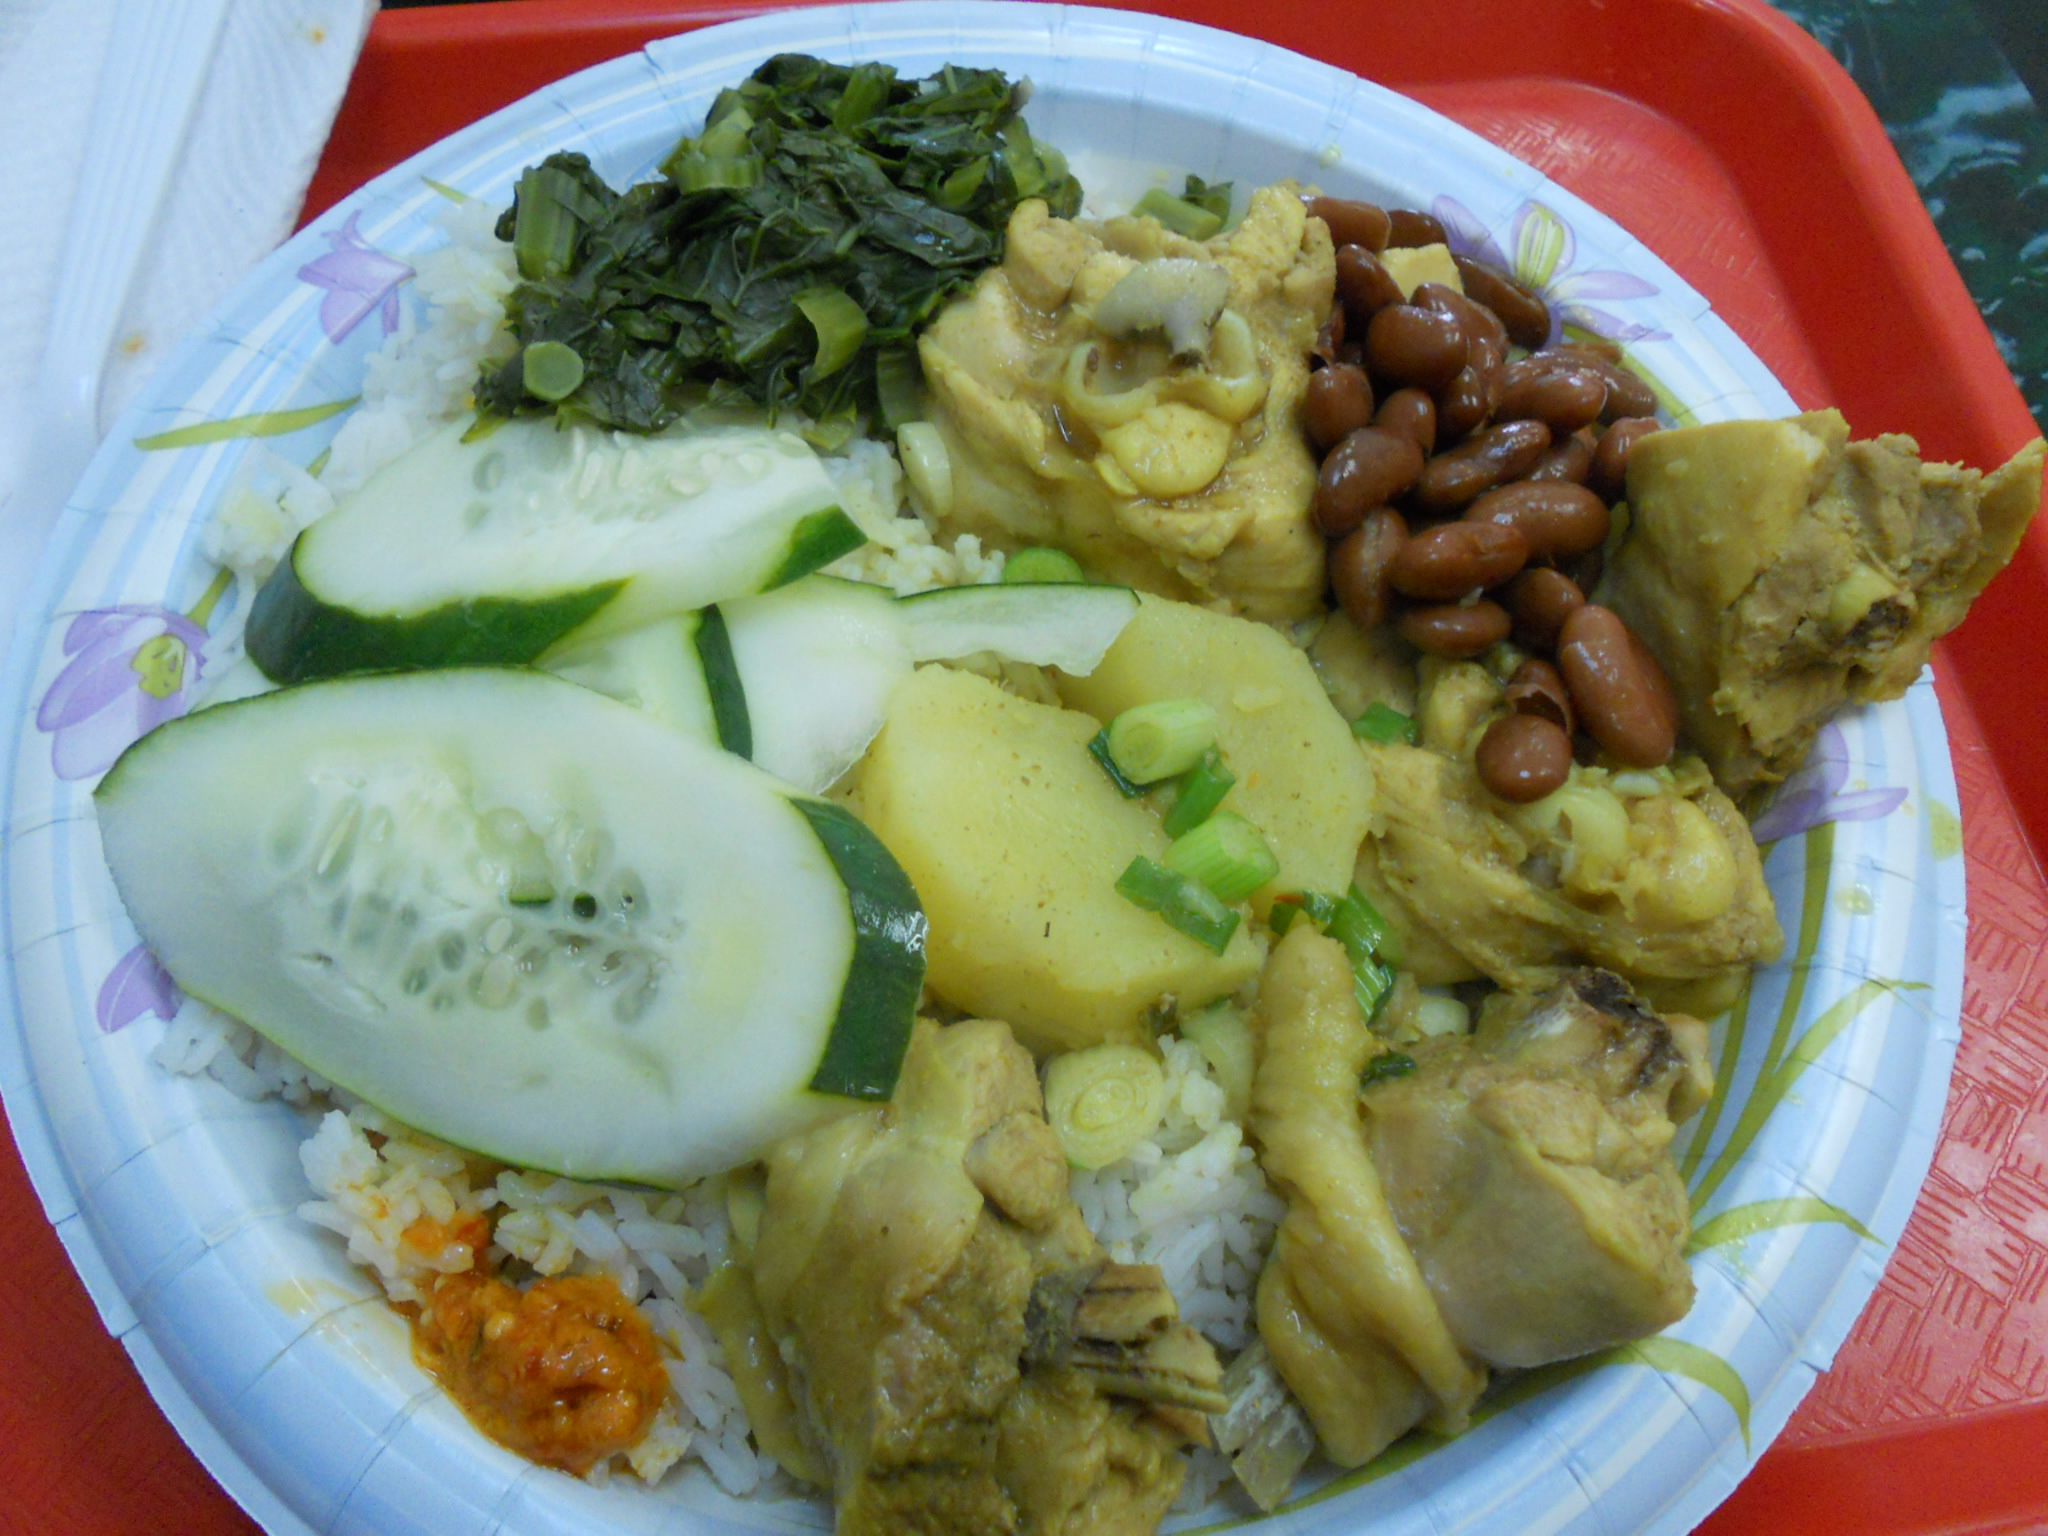 Surinamese food at Warung Kario NYC | United Nations of Food (NYC)